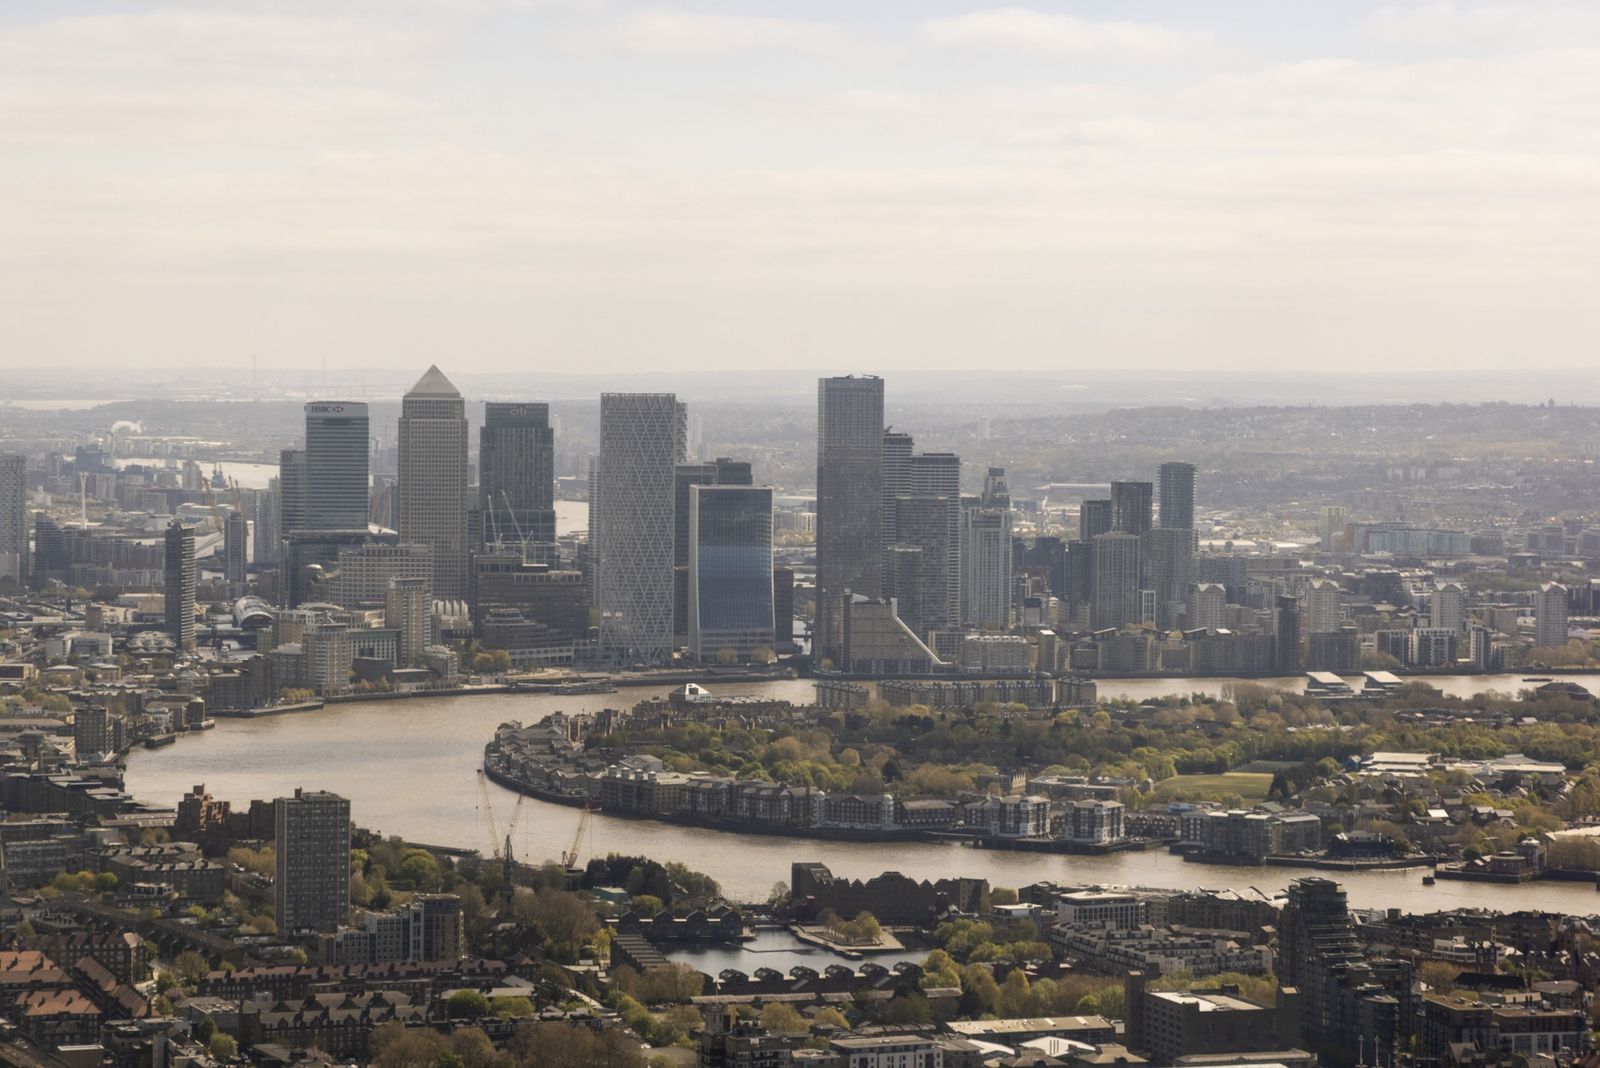 ربع شركات لندن تُقلص عدد مكاتبها بسبب سياسة العمل المرن